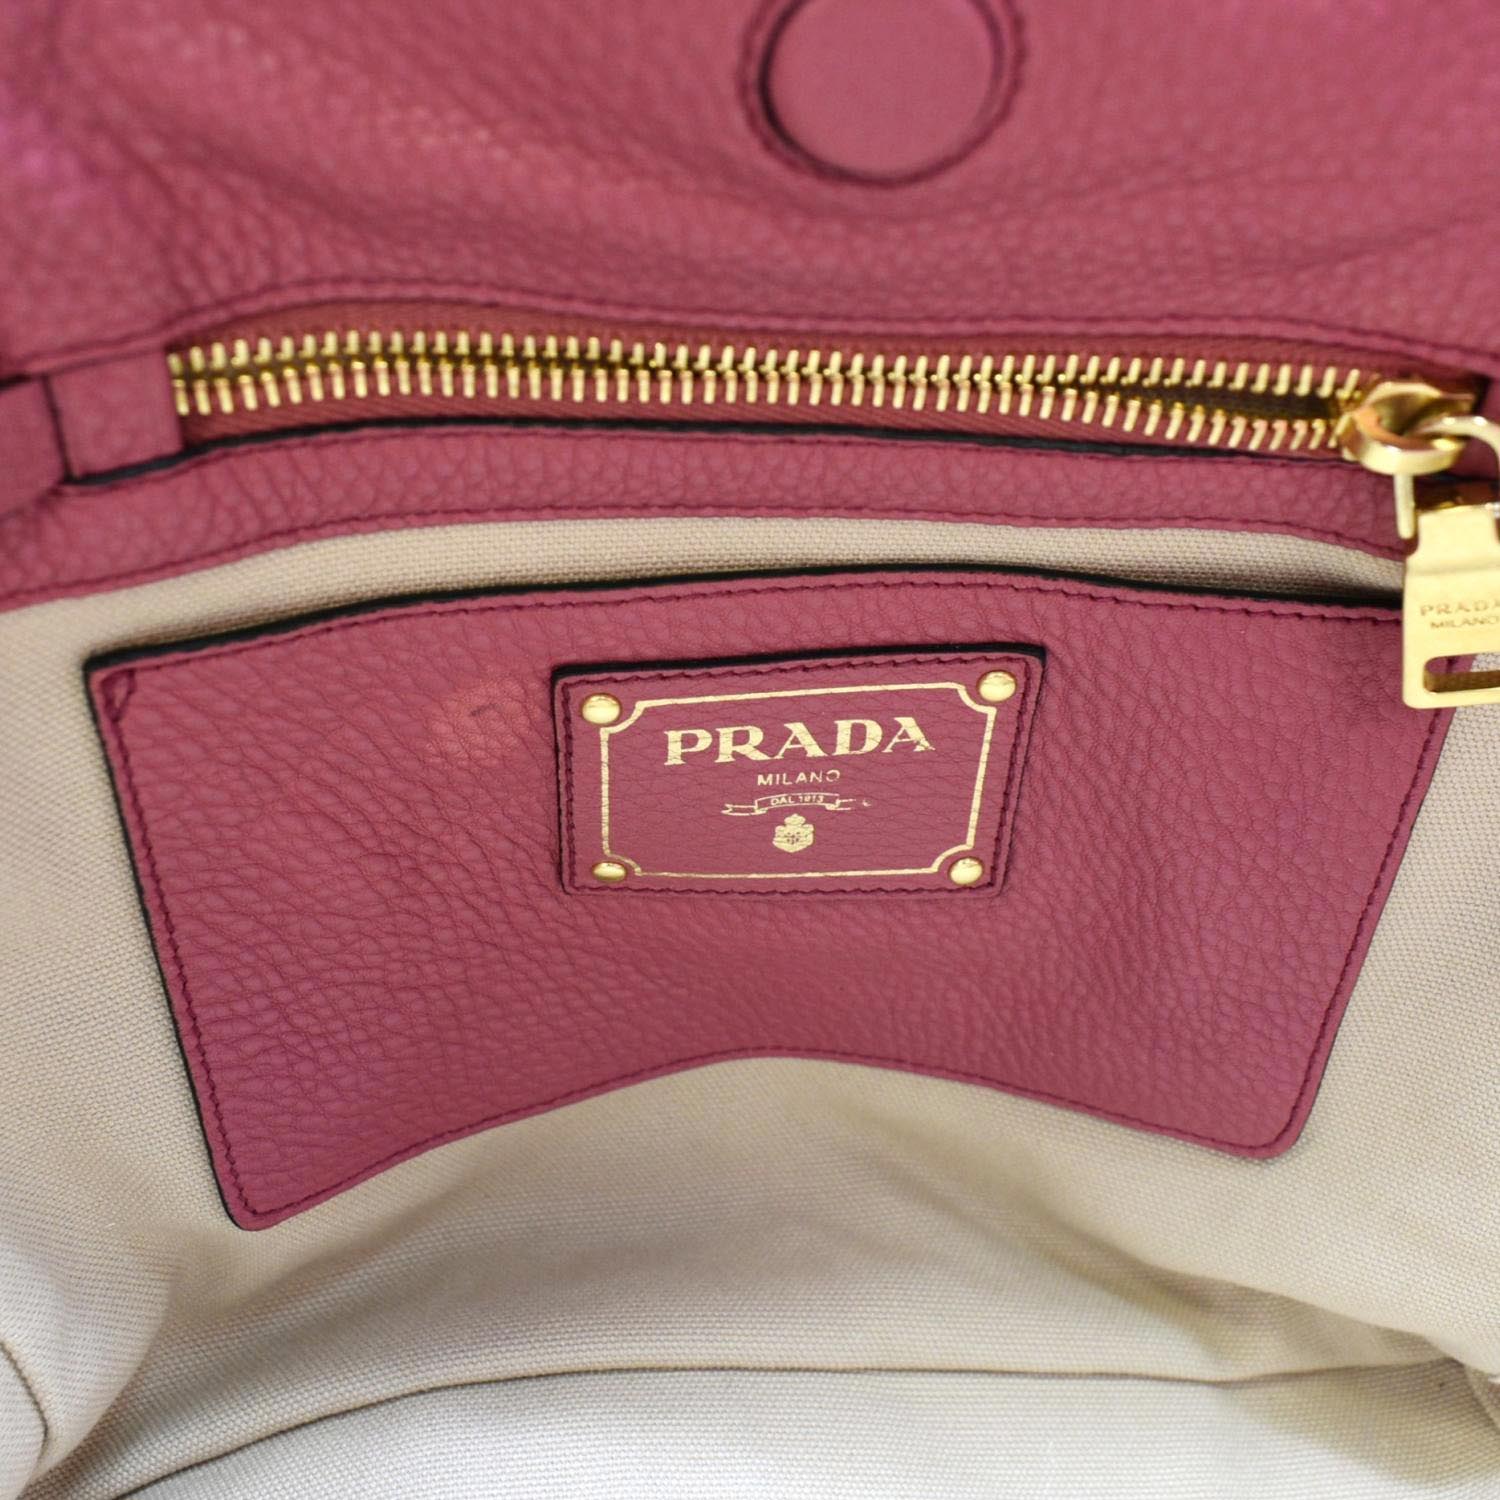 Prada Saffiano Leather Wallet w Card Case GHW Peony Pink Purse WOC w Tag  $975 | eBay